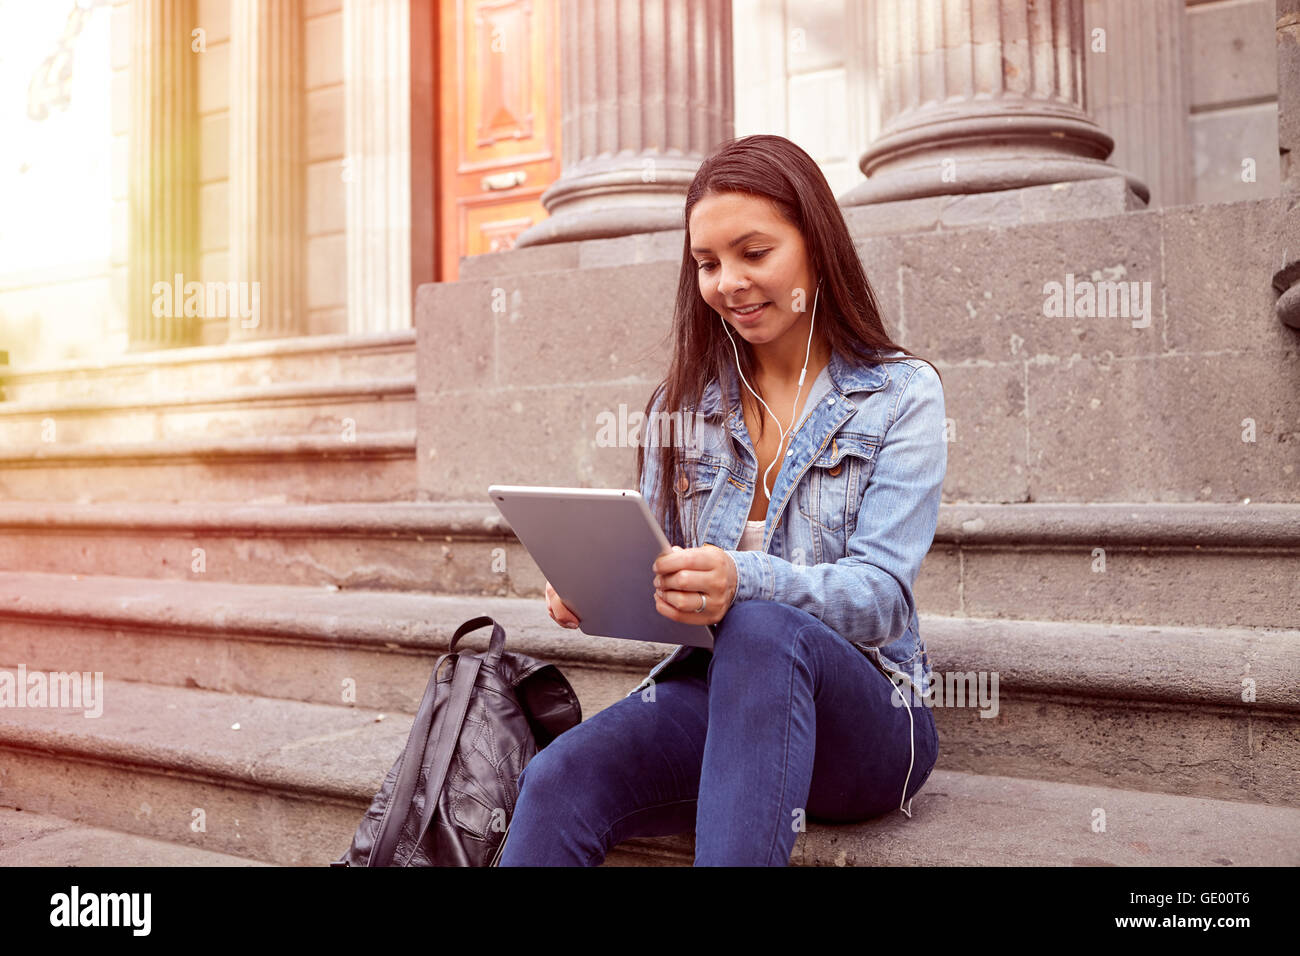 Hübsches junges Mädchen Blick auf ihr Tablet beim Sitzen auf den Stufen von einem alten Gebäude Lächeln auf den Lippen tragen ihre Haare locker und lässig Stockfoto